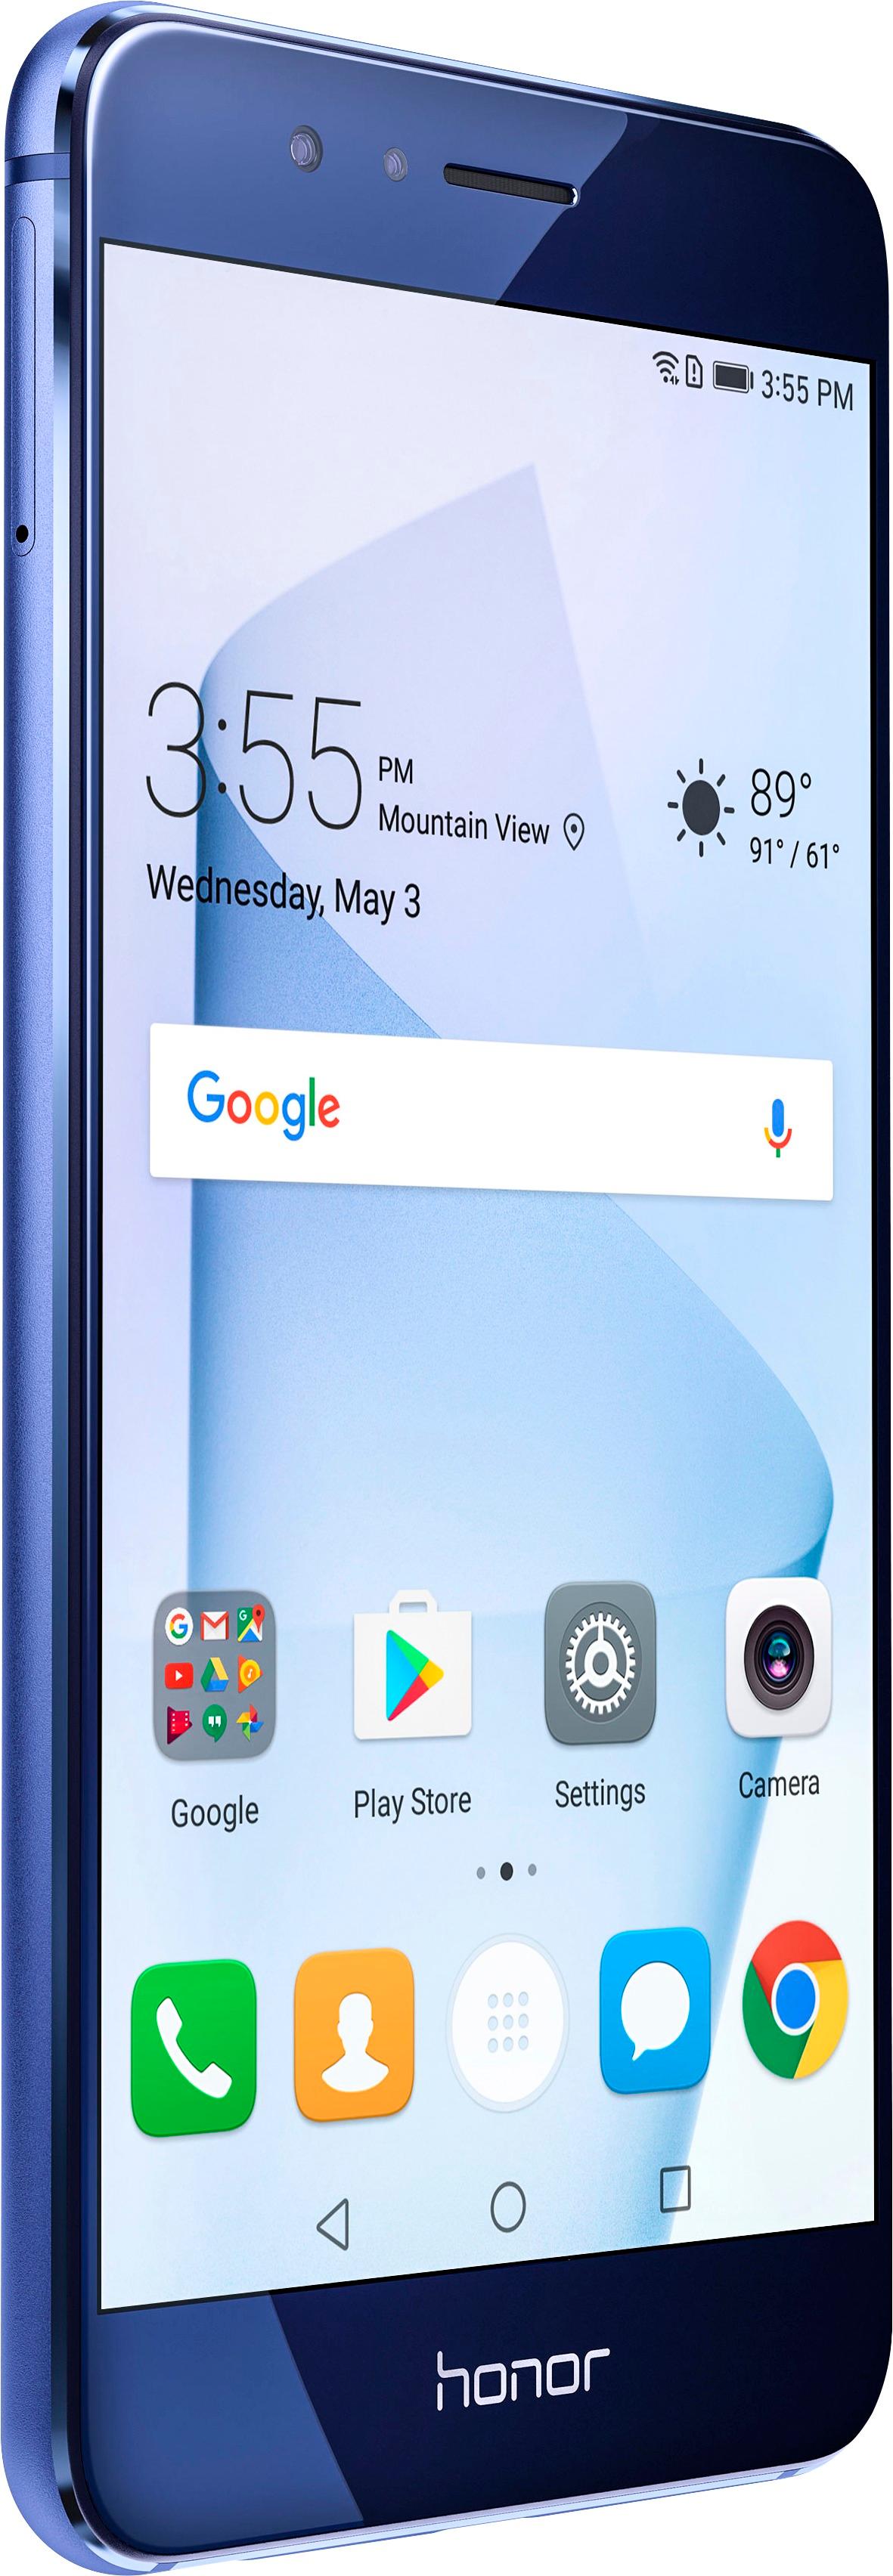 converteerbaar Op het randje Injectie Best Buy: Huawei Honor 8 4G LTE with 32GB Memory Cell Phone (Unlocked)  Sapphire blue FRD-L04